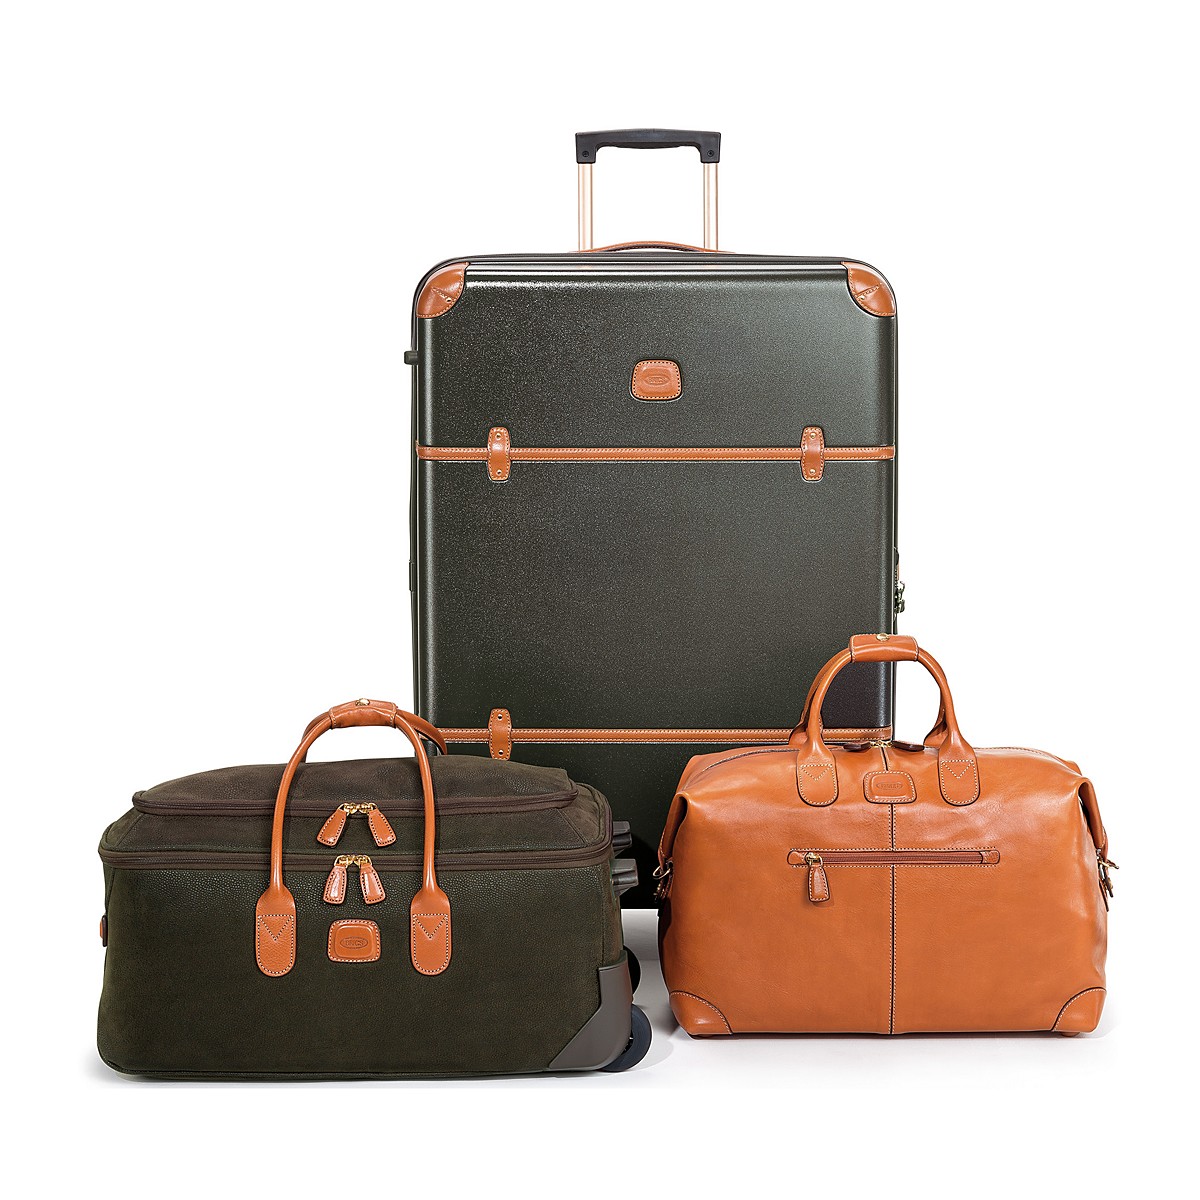 travel gear luggage company